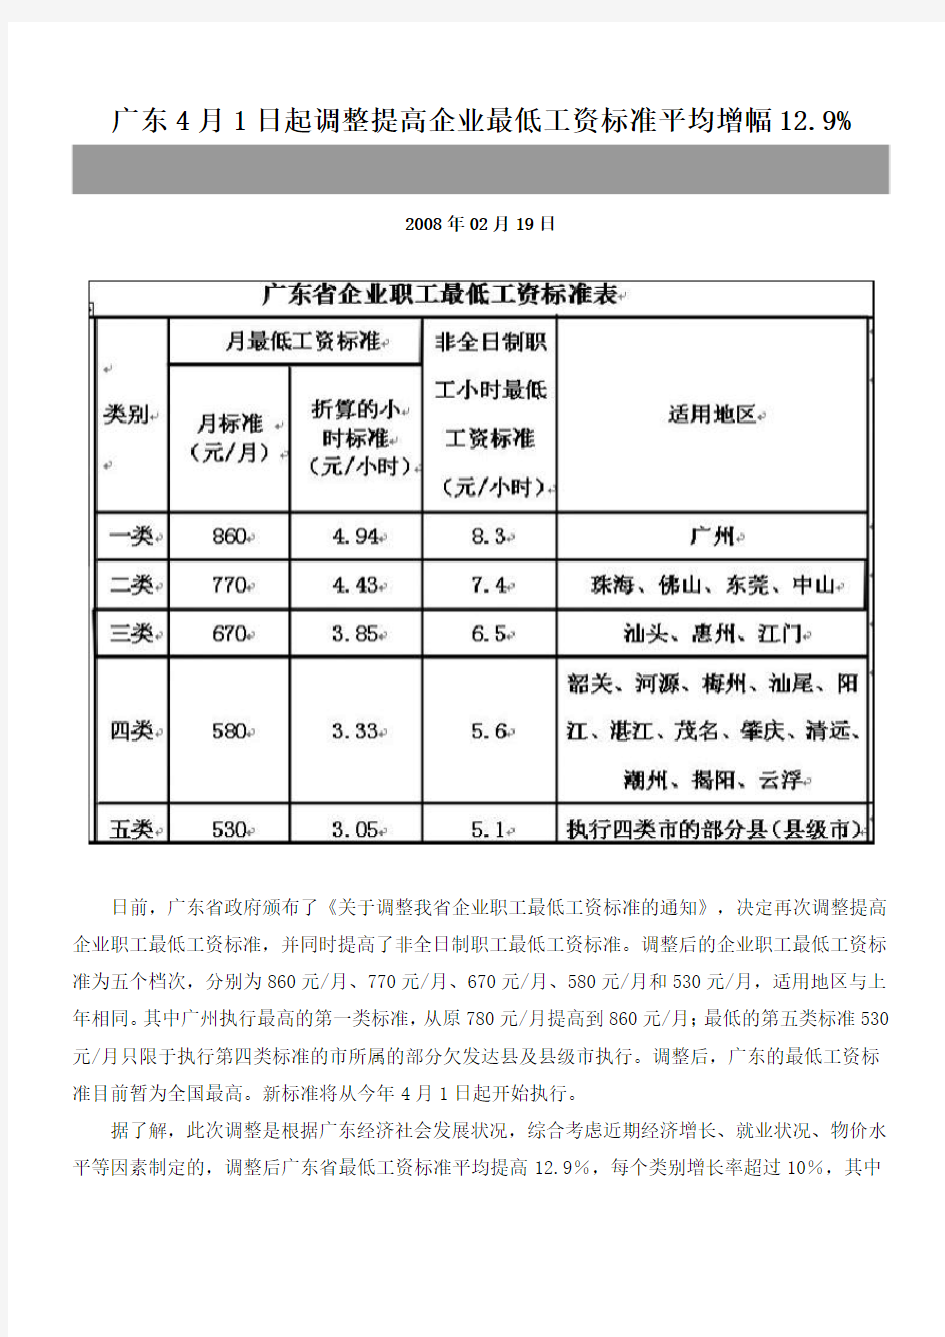 广东4月1日起调整提高企业最低工资标准平均增幅12